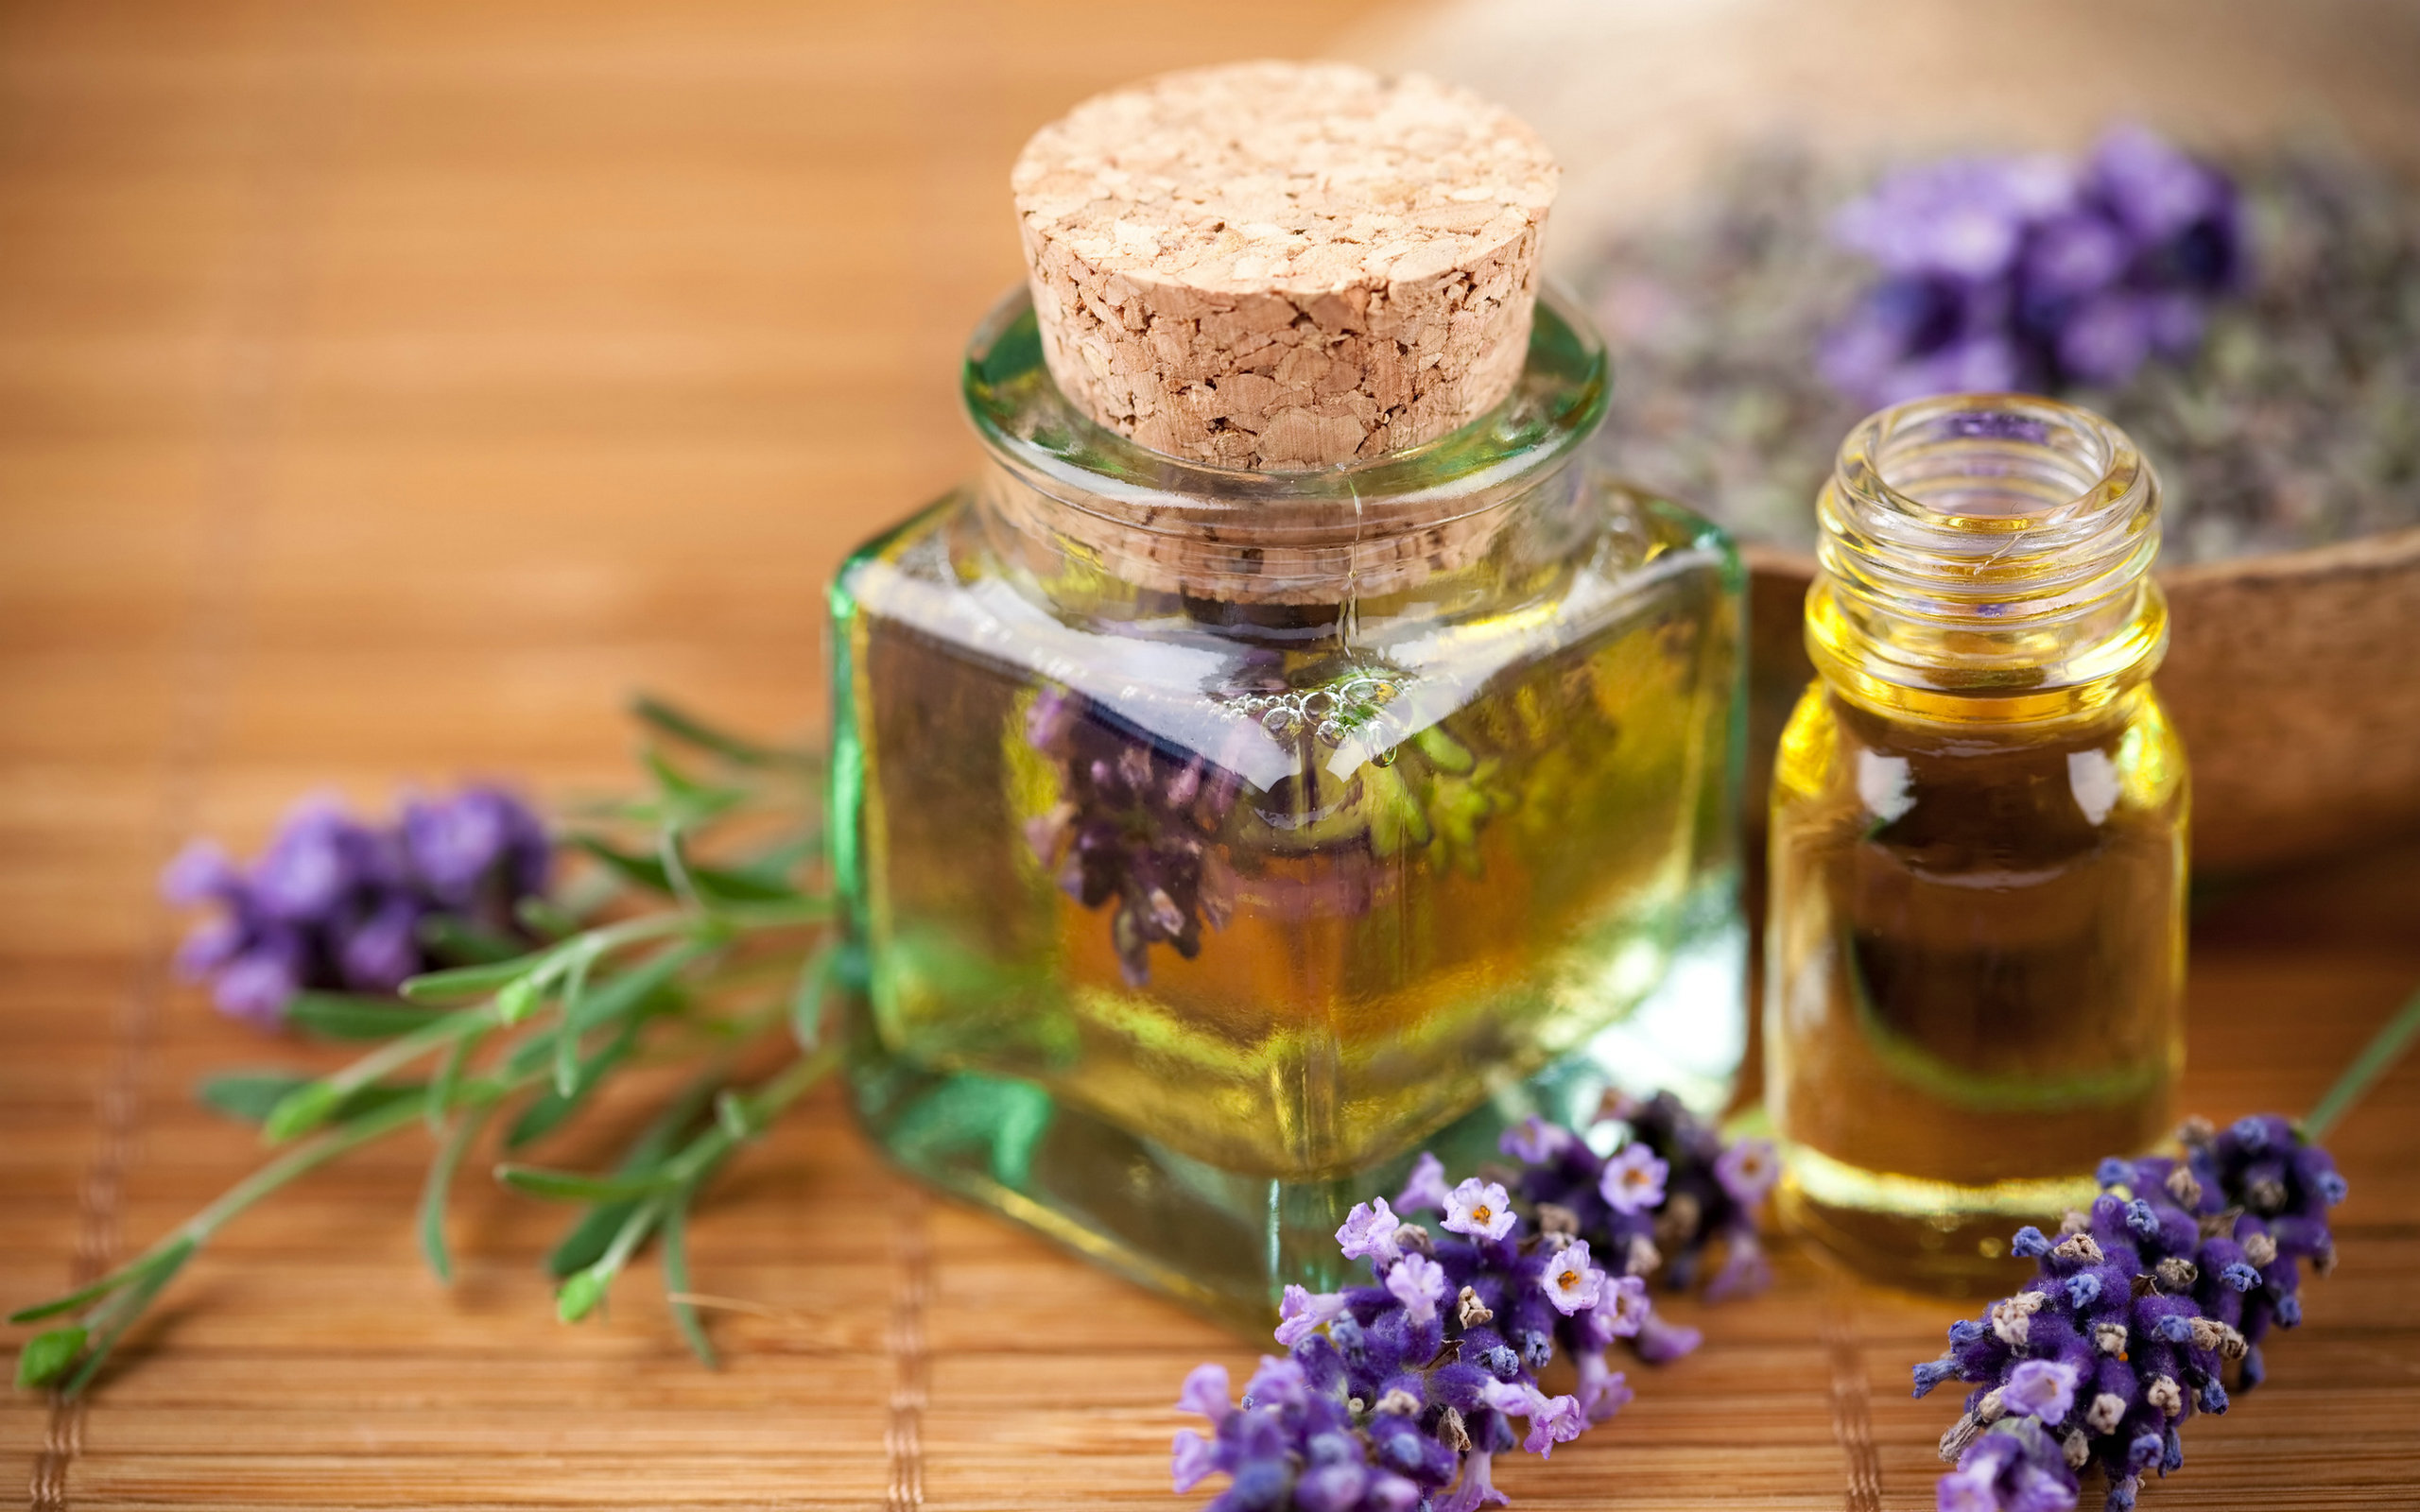 5 essential oils help whiten and brighten skin